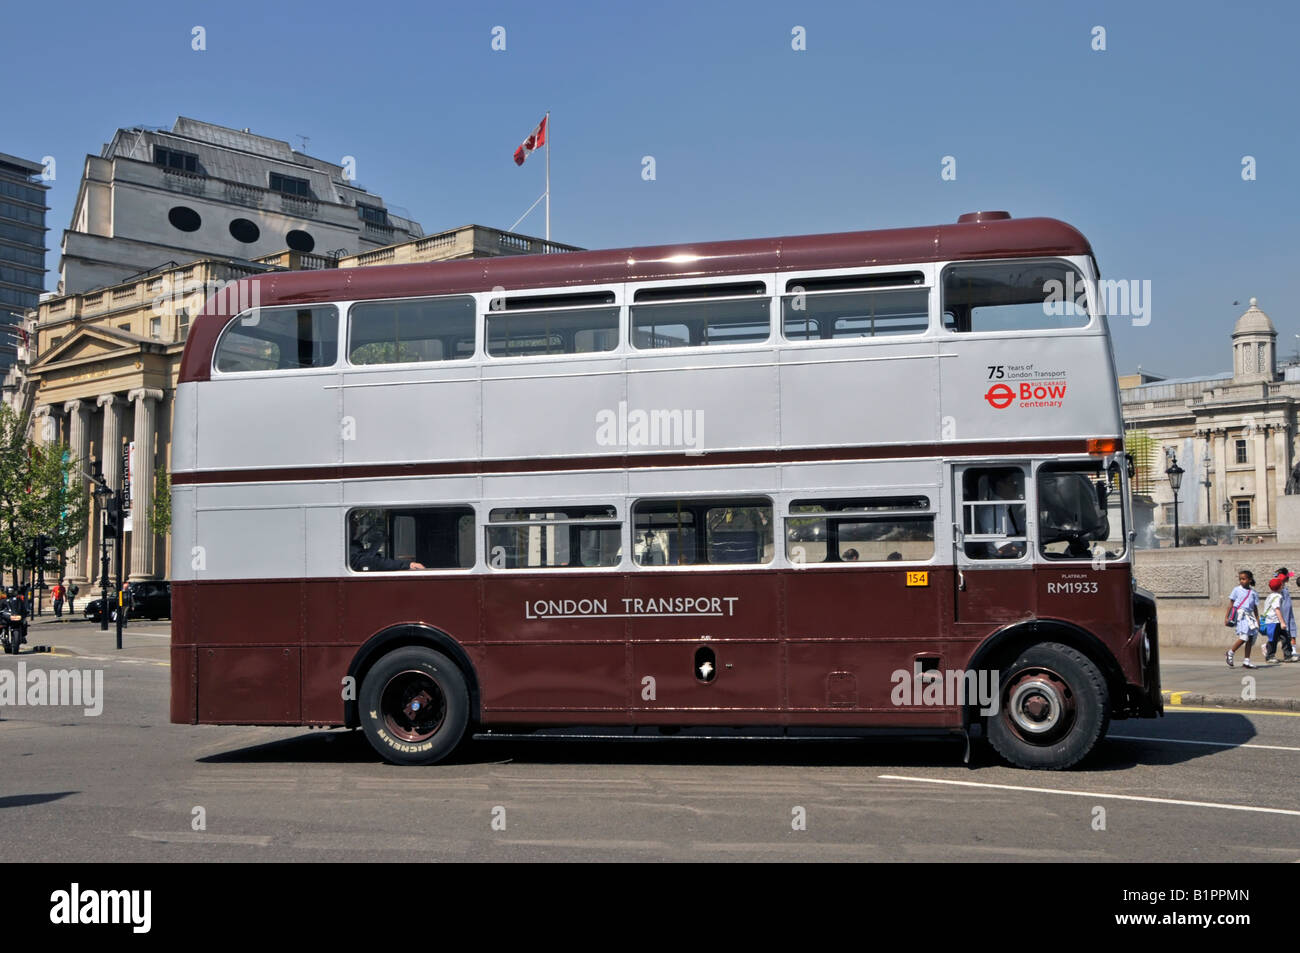 London street scene Seite Doppeldeckerbus Routemaster bus RM 1933 Sonderlackierung Gedenken an 75. Jahrestag London Transport Trafalgar Square London, Großbritannien Stockfoto